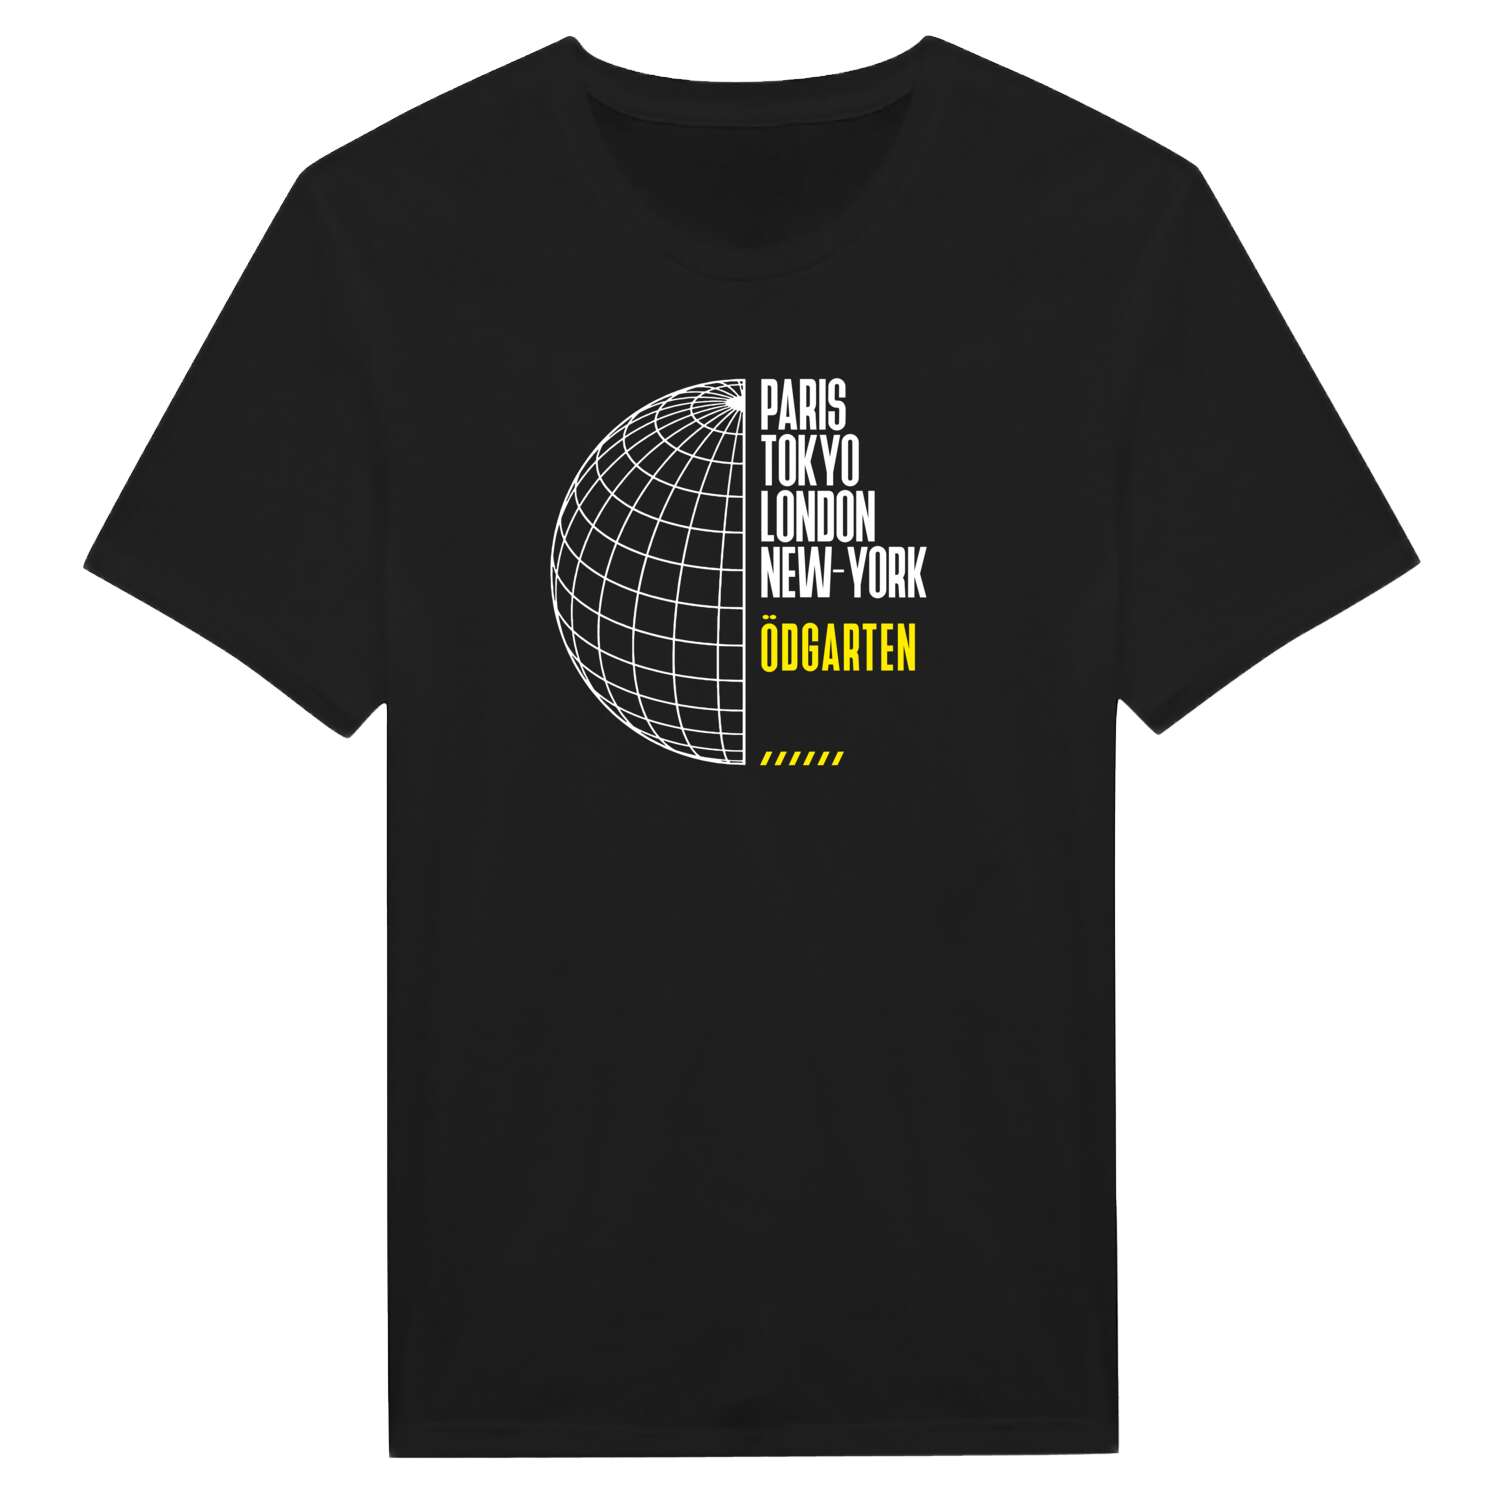 Ödgarten T-Shirt »Paris Tokyo London«